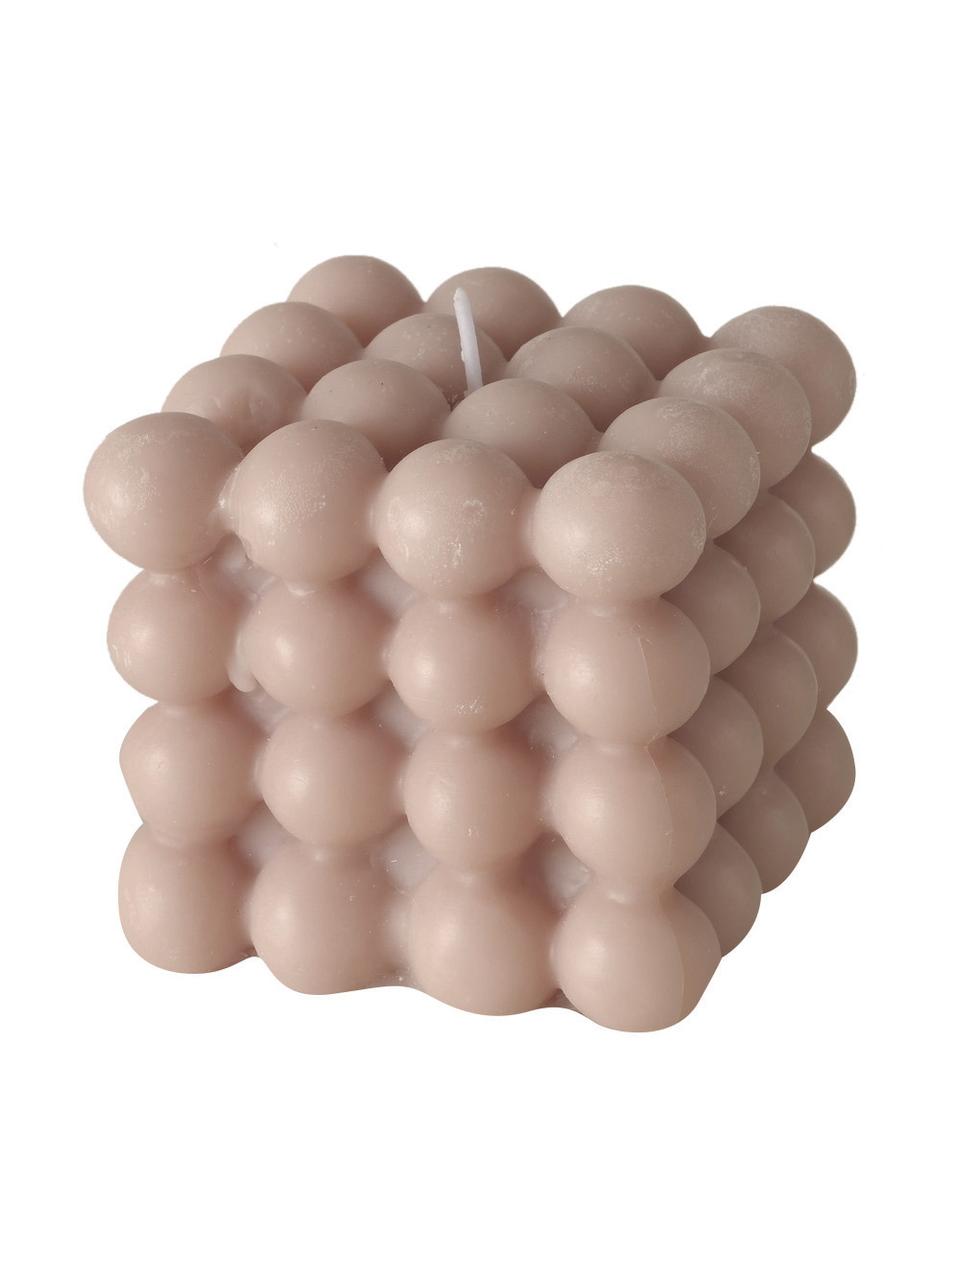 Komplet sześciennych świec Bubble, 3 elem., Wosk, Lila, blady różowy, biały, Ø 8 x W 8 cm